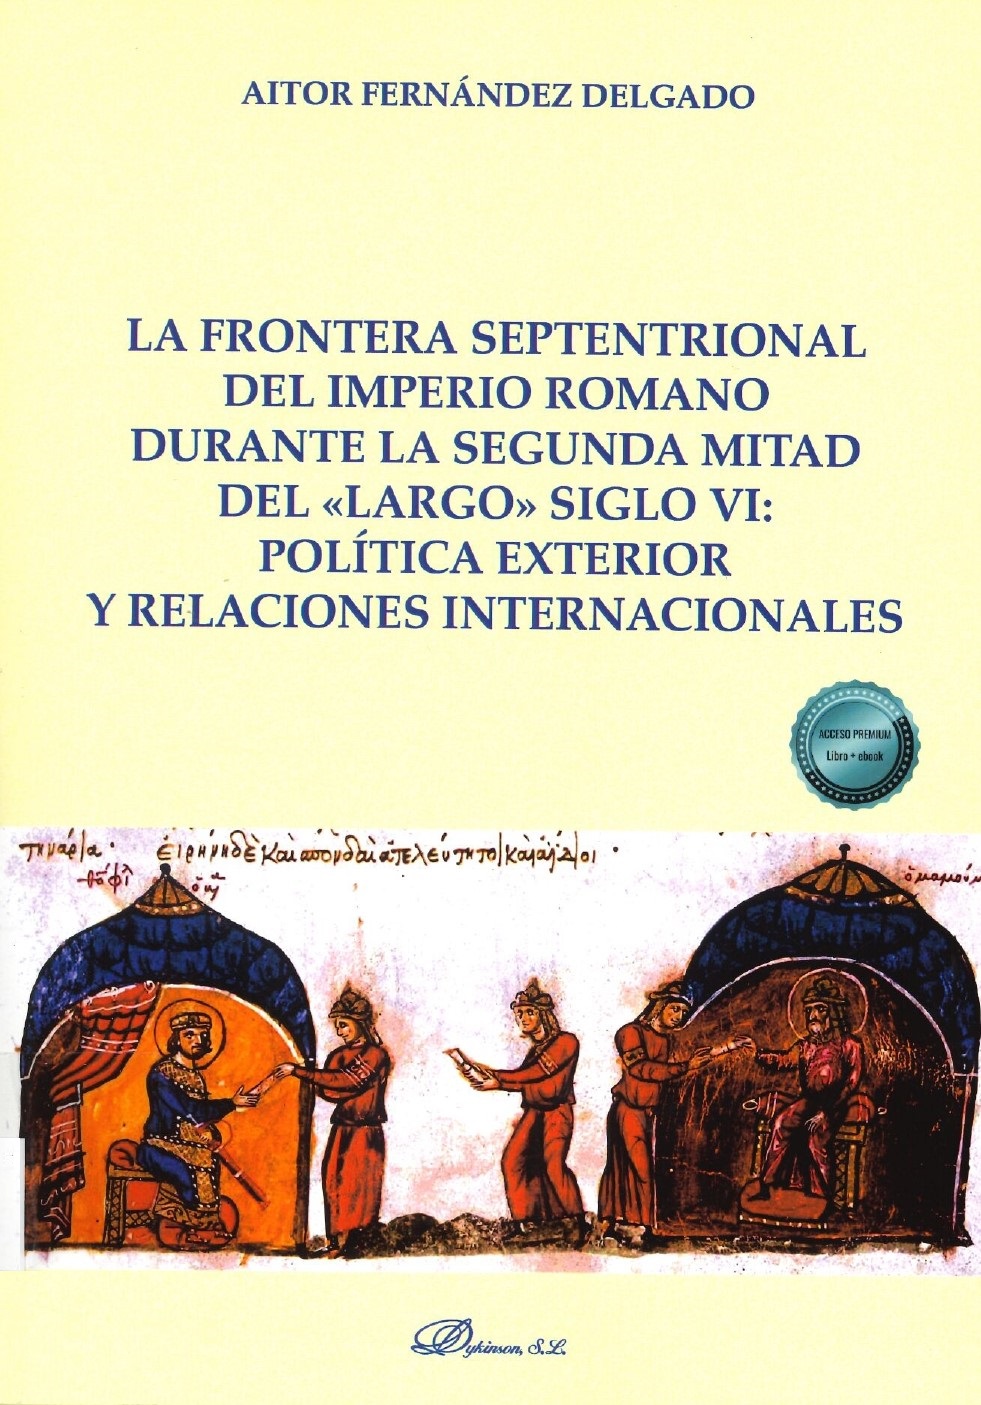 Imagen de portada del libro La frontera septentrional del Imperio Romano durante la segunda mitad del 'largo siglo VI'